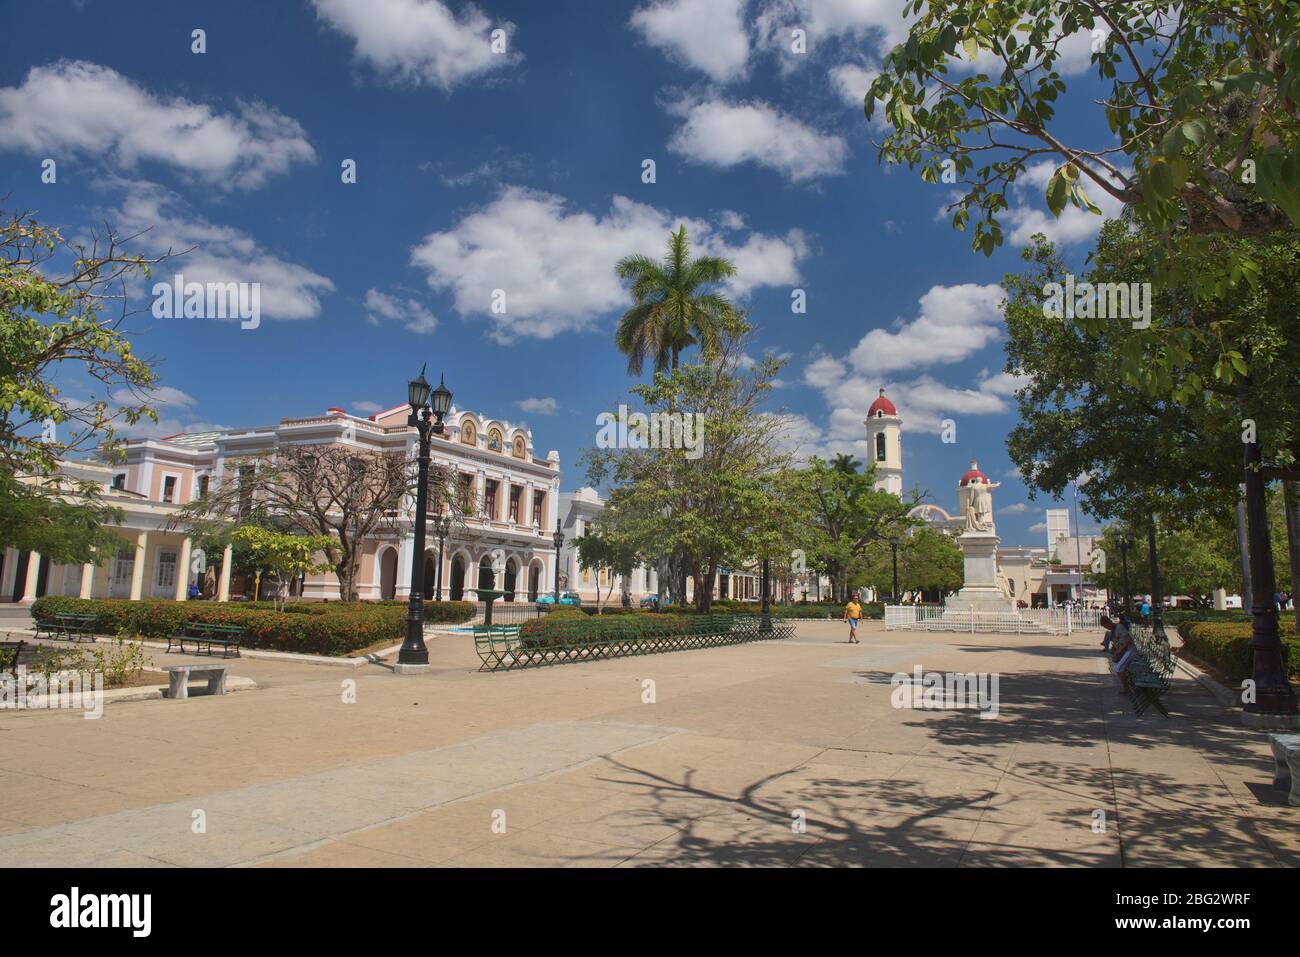 La Cattedrale di nostra Signora dell'Immacolata Concezione vista da Plaza Jose Marti, Cienfuegos, Cuba Foto Stock